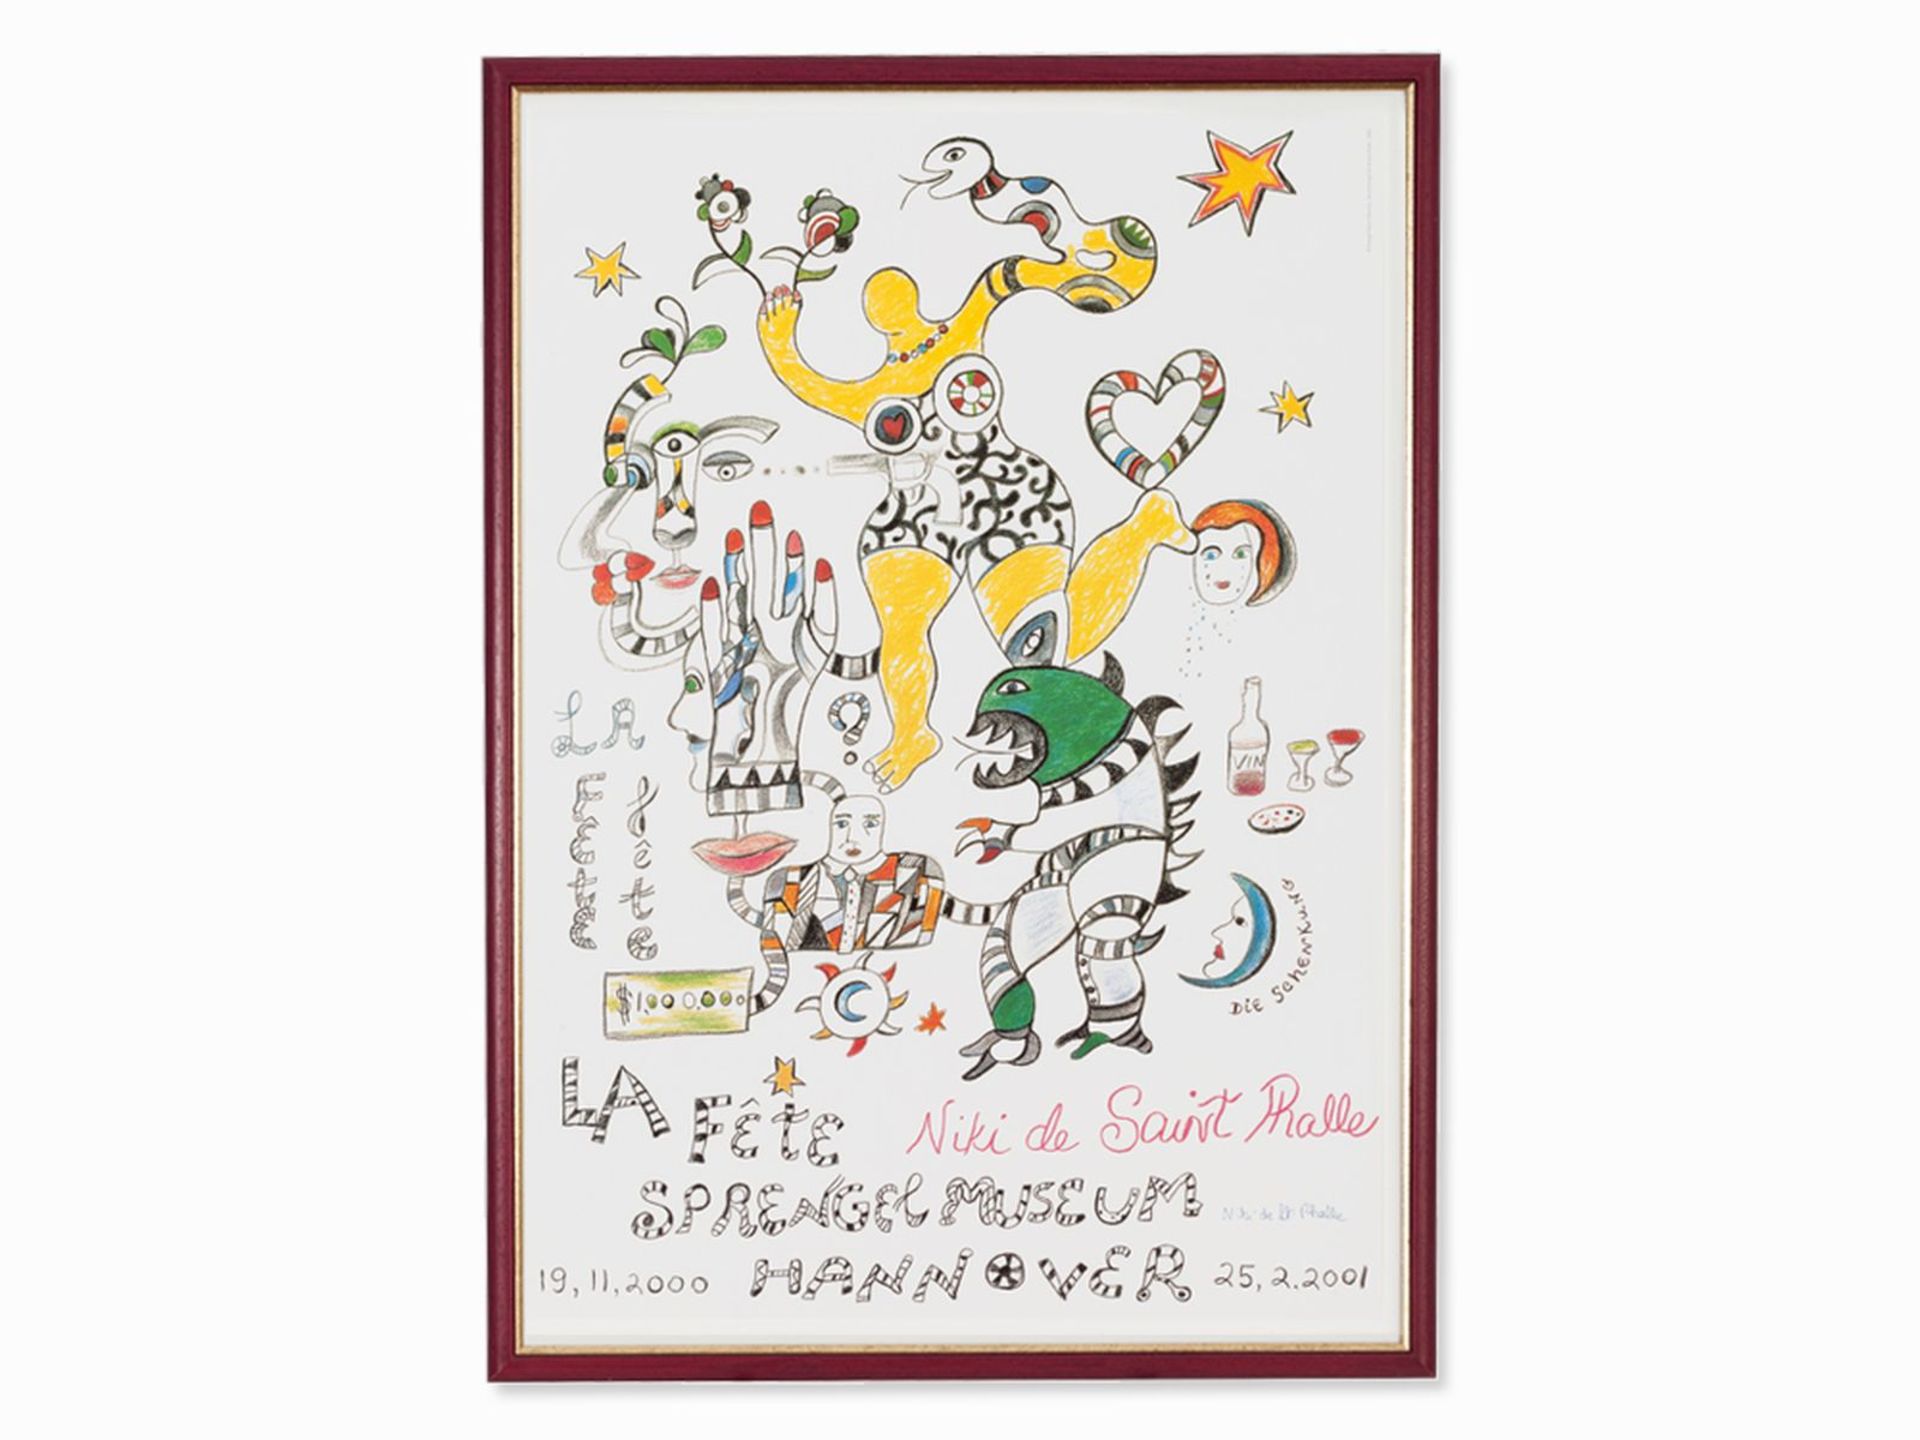 Niki de Saint Phalle, poster "La Fete. The donation "